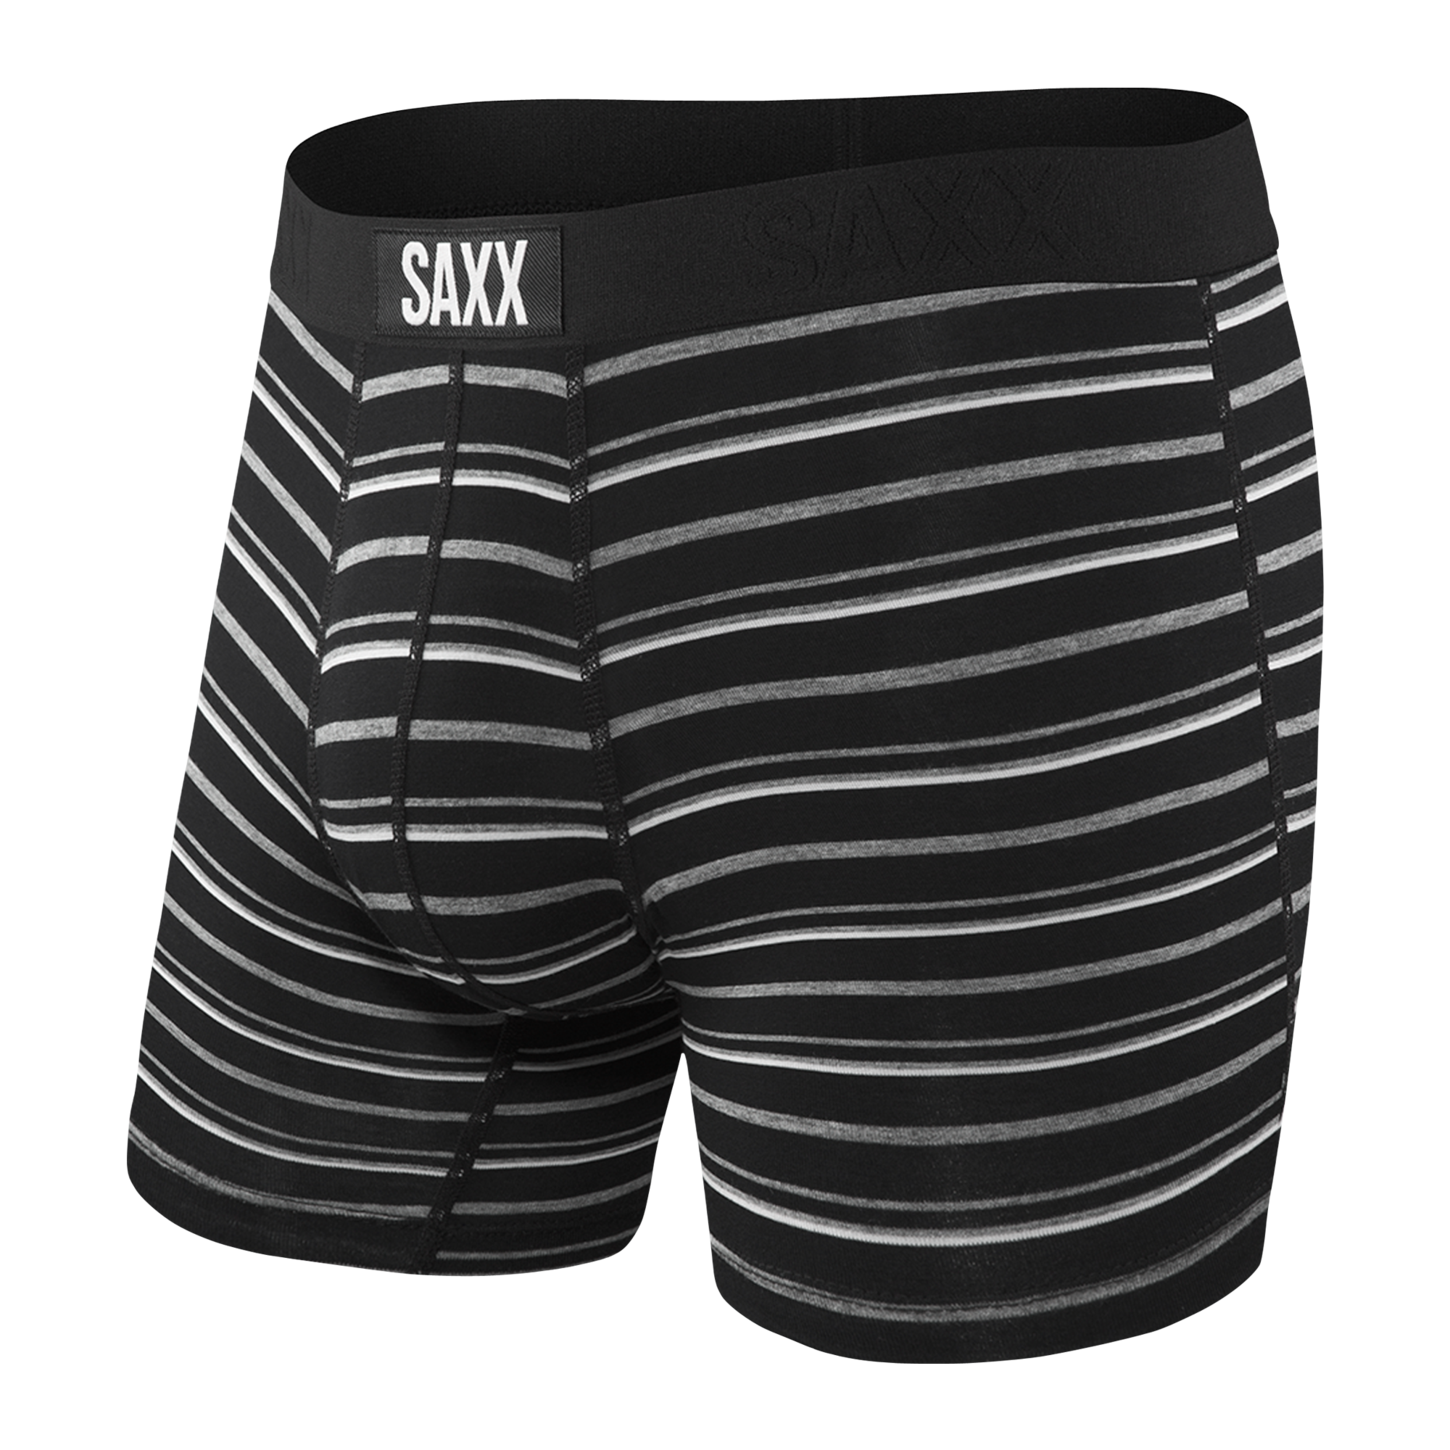 Men's underwear/boxer by Saxx, SXBM35 OMM